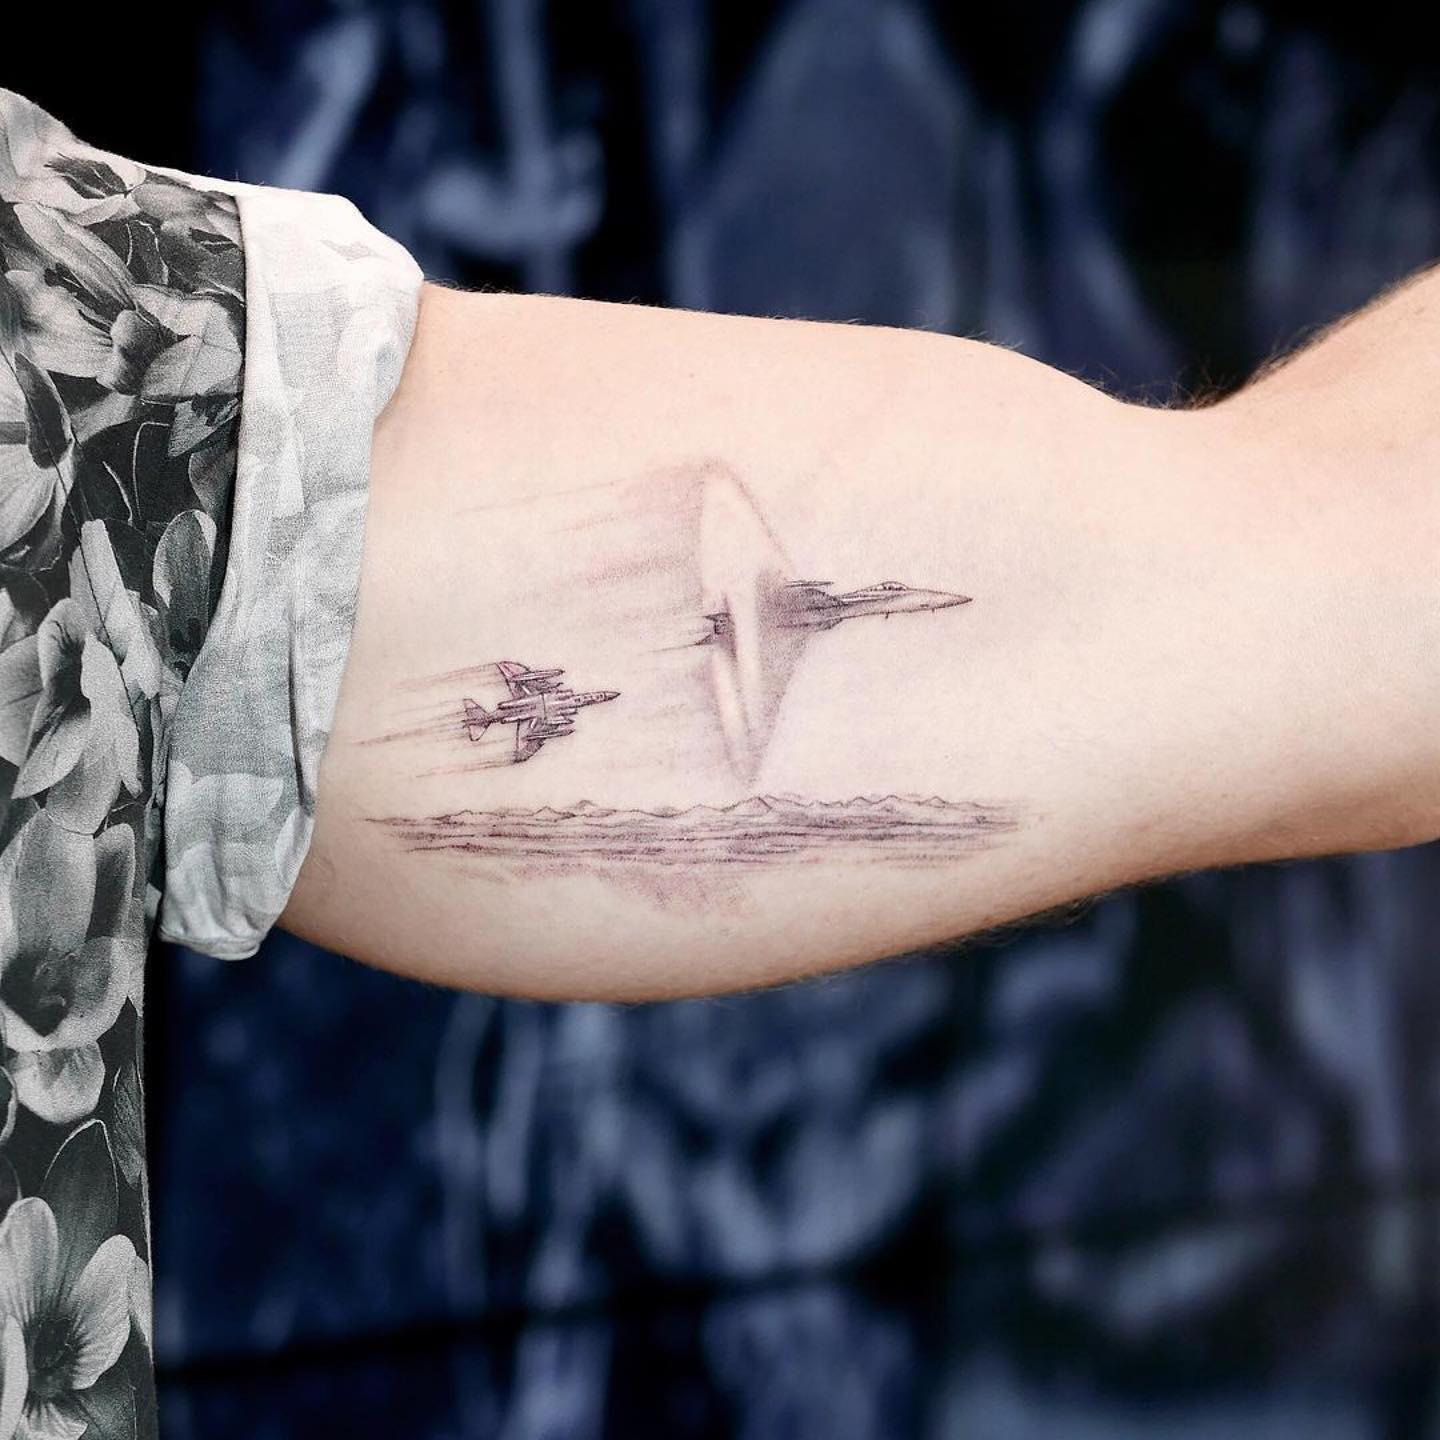 Tatuaje de un avión volador